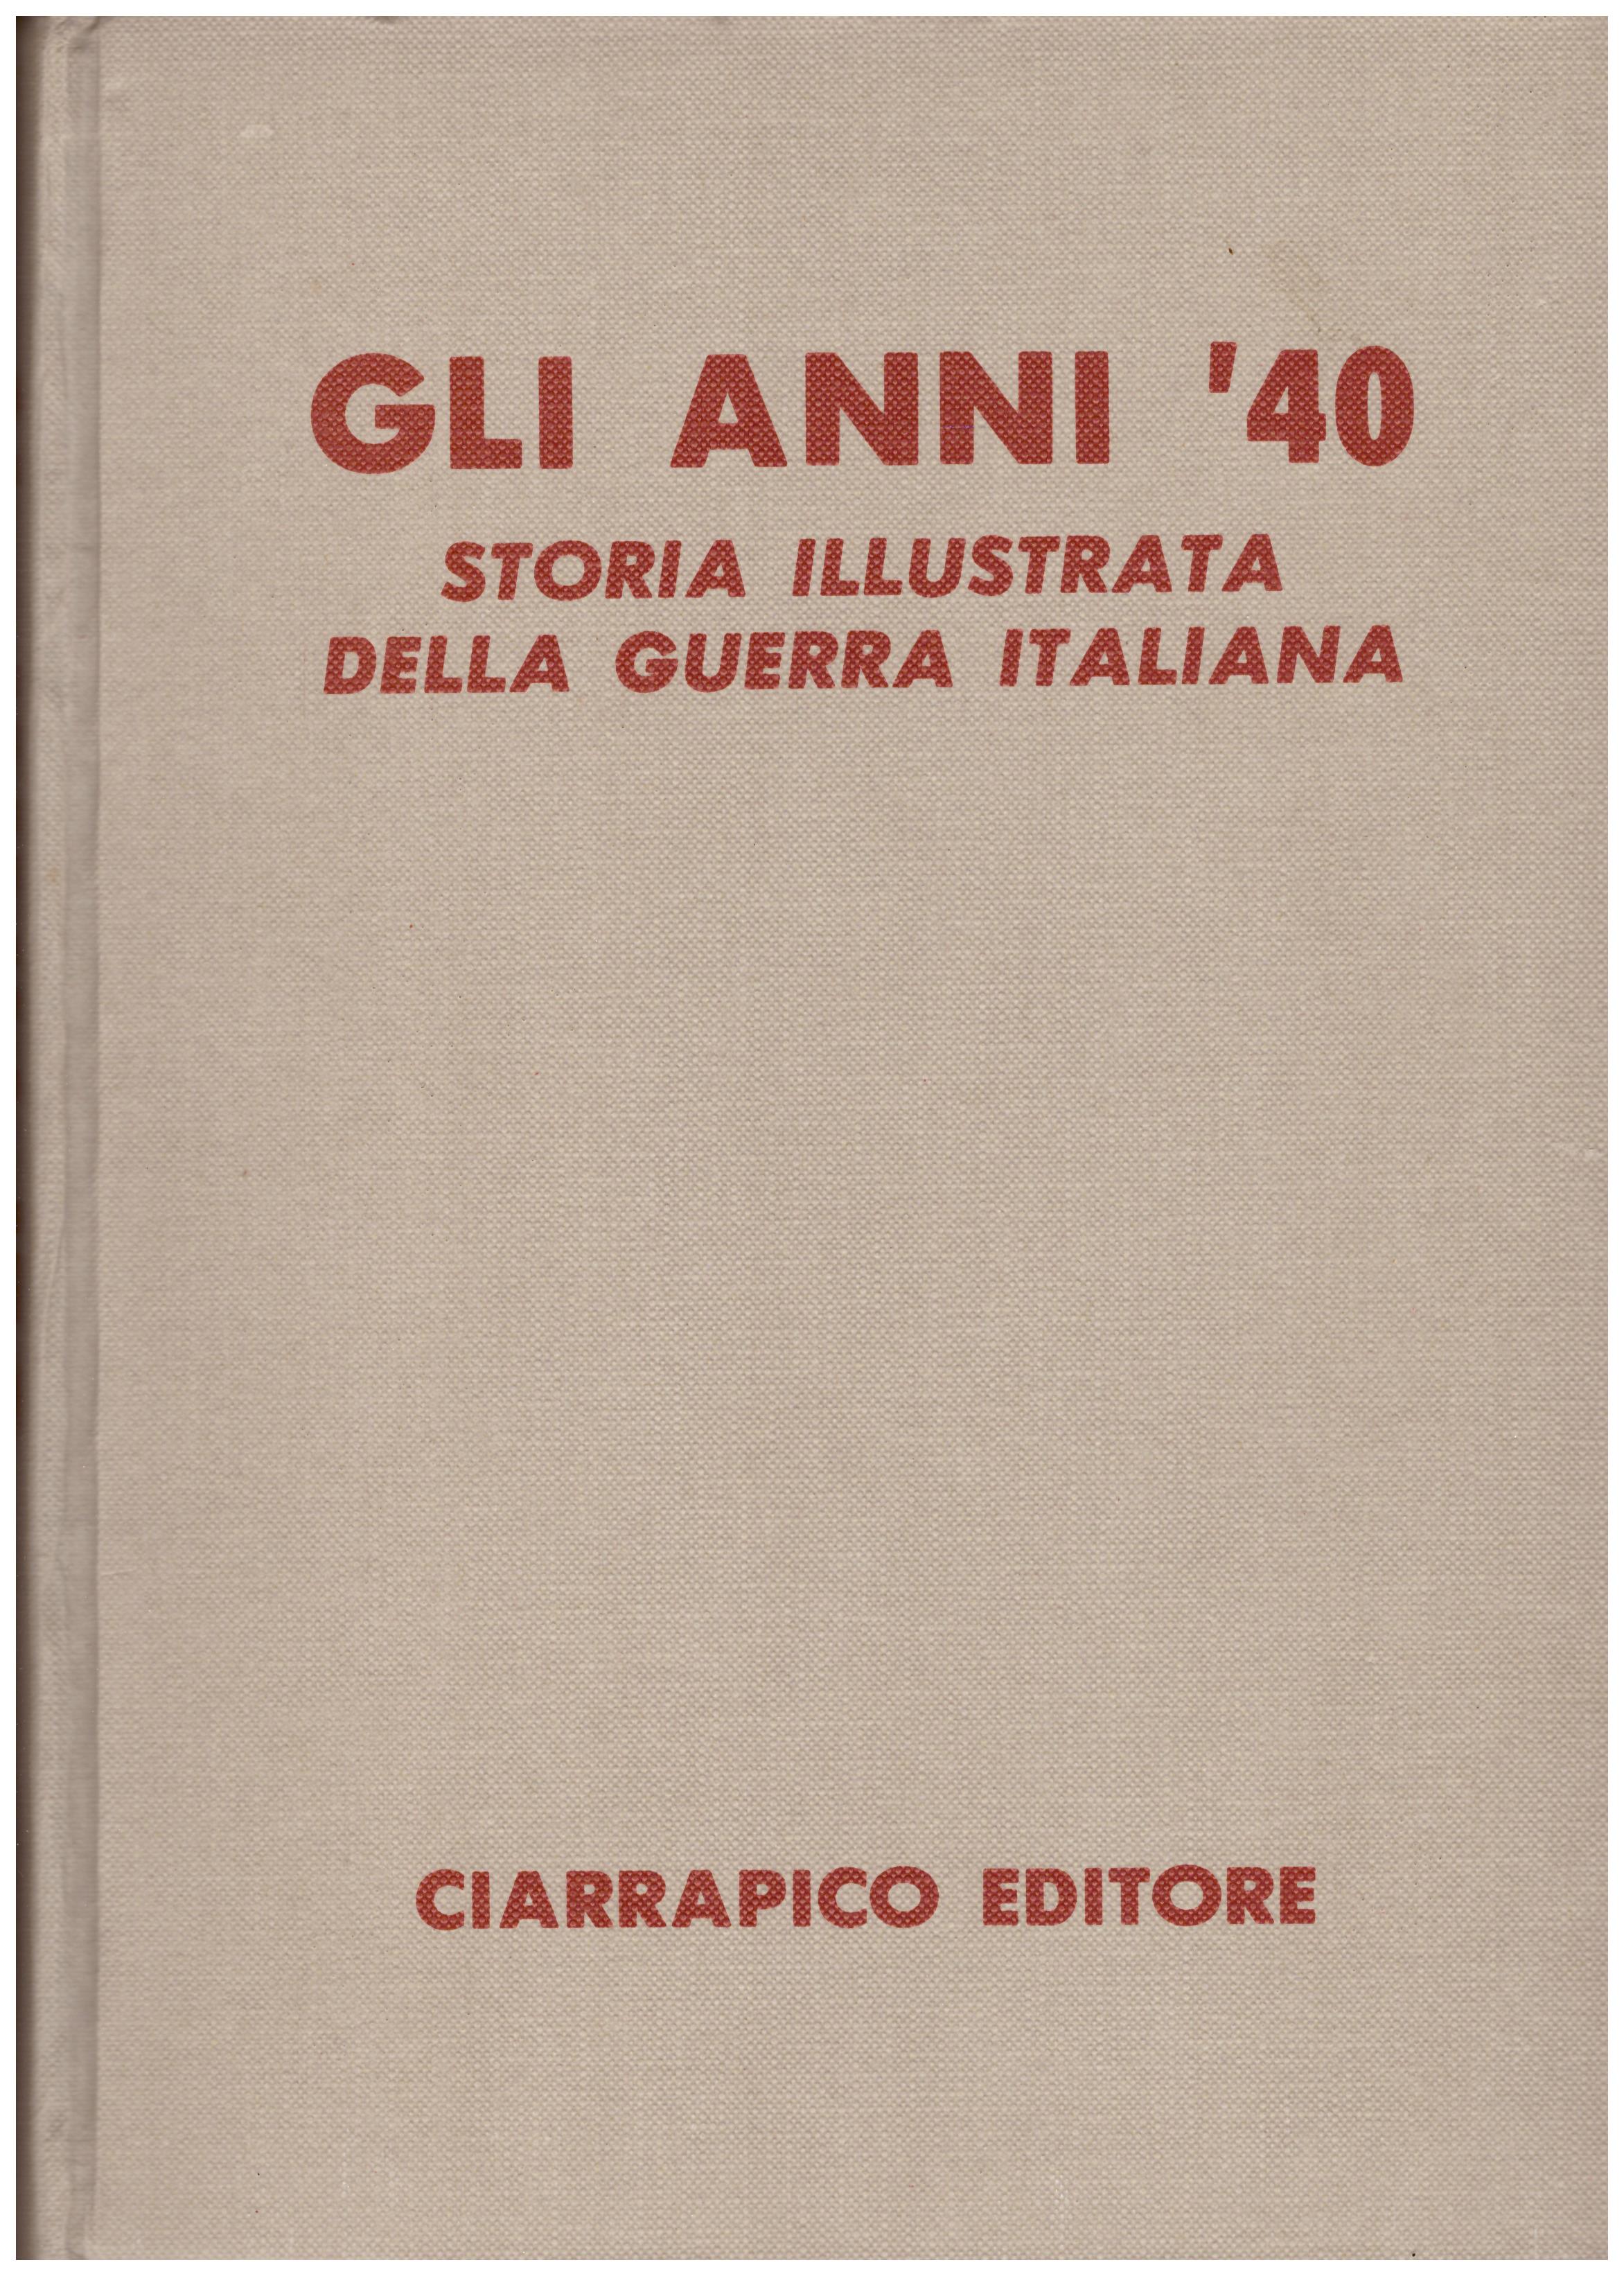 Titolo: Gli anni '40, storia illustrata della guerra italiana, volume 2  Autore: AA.VV.  Editore: Ciarrapico editore, 1981